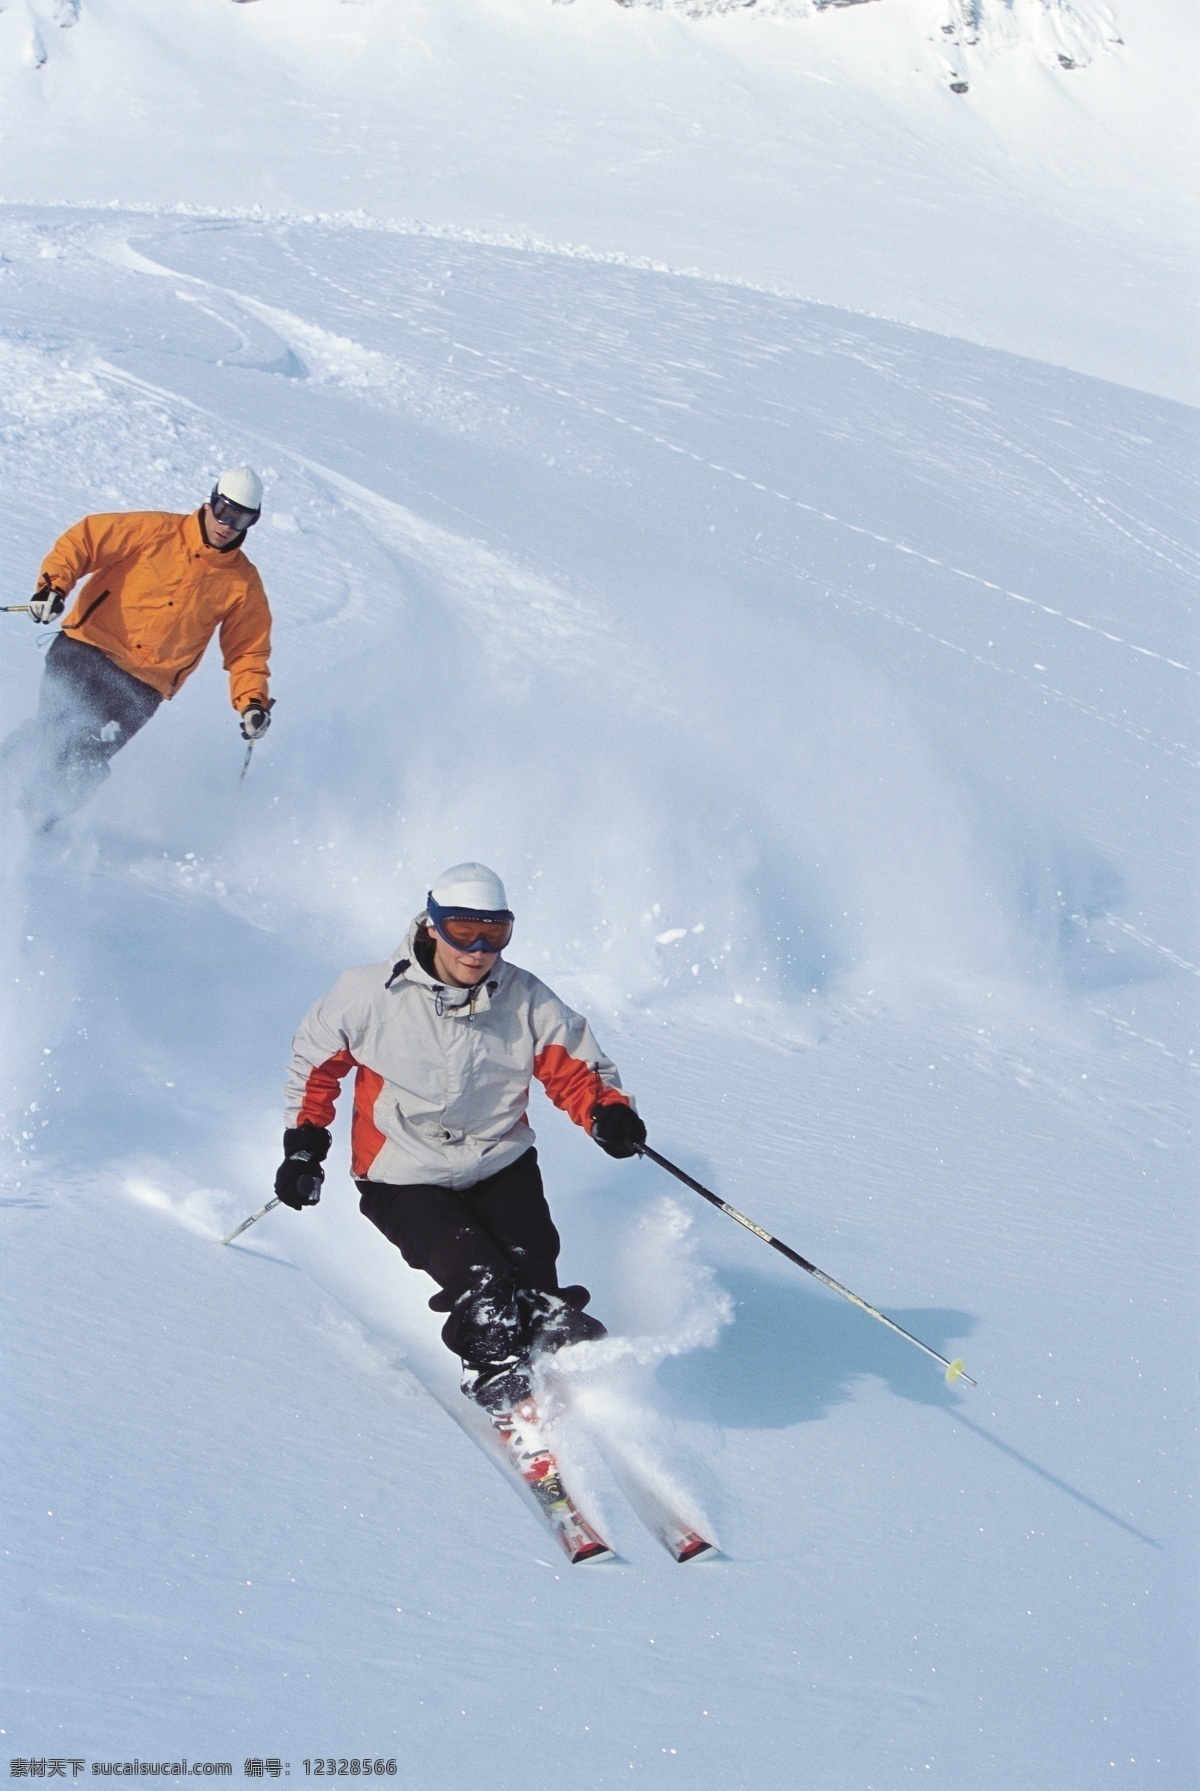 雪地 上 滑雪 运动员 高清 雪地运动 划雪运动 极限运动 体育项目 下滑 速度 运动图片 生活百科 雪山 风景 摄影图片 高清图片 体育运动 蓝色